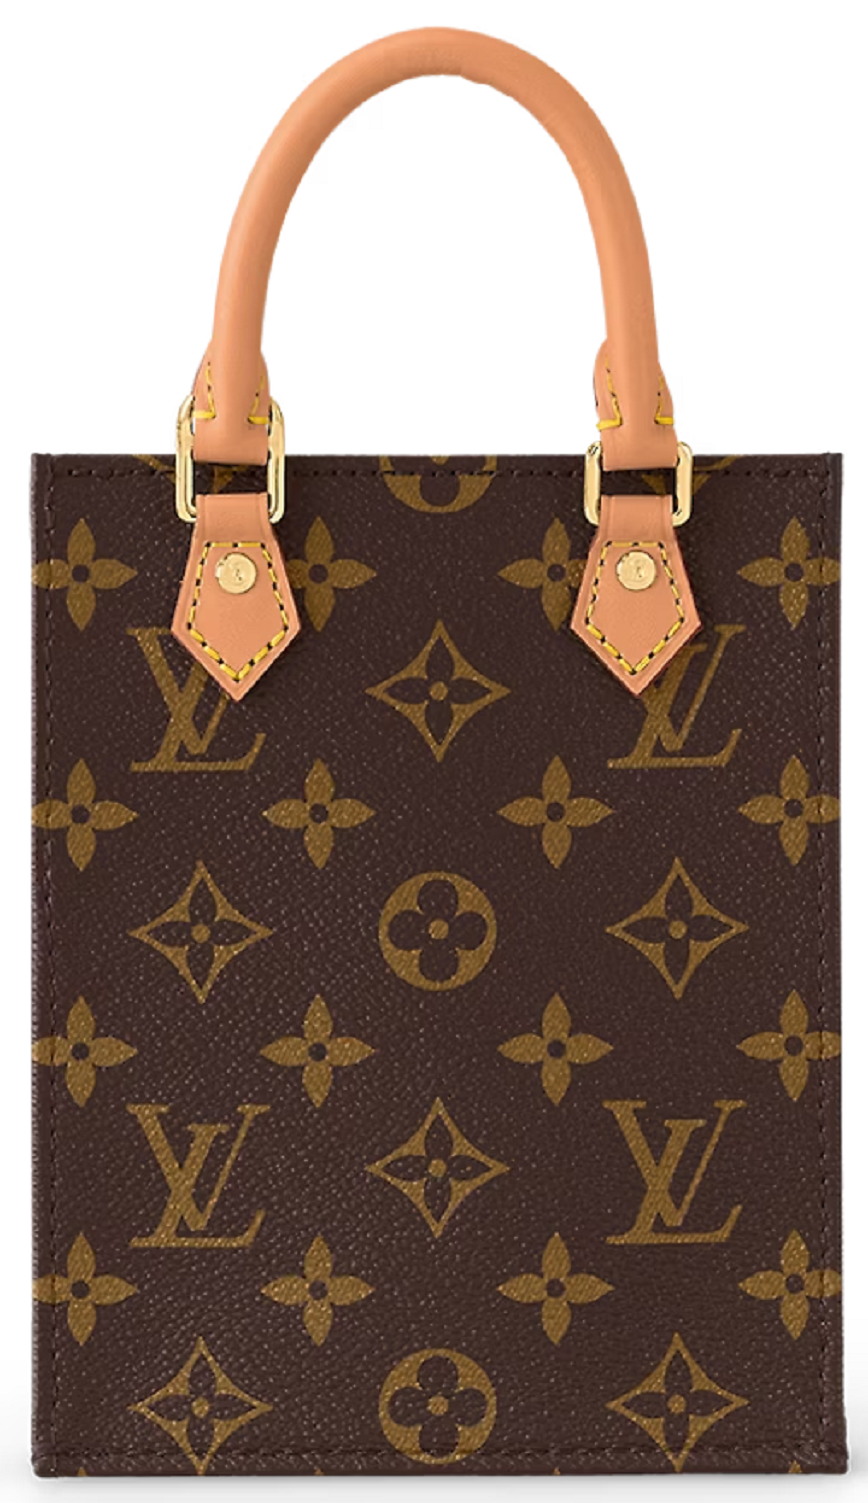 Louis Vuitton MONOGRAM Petit sac plat (M81295)